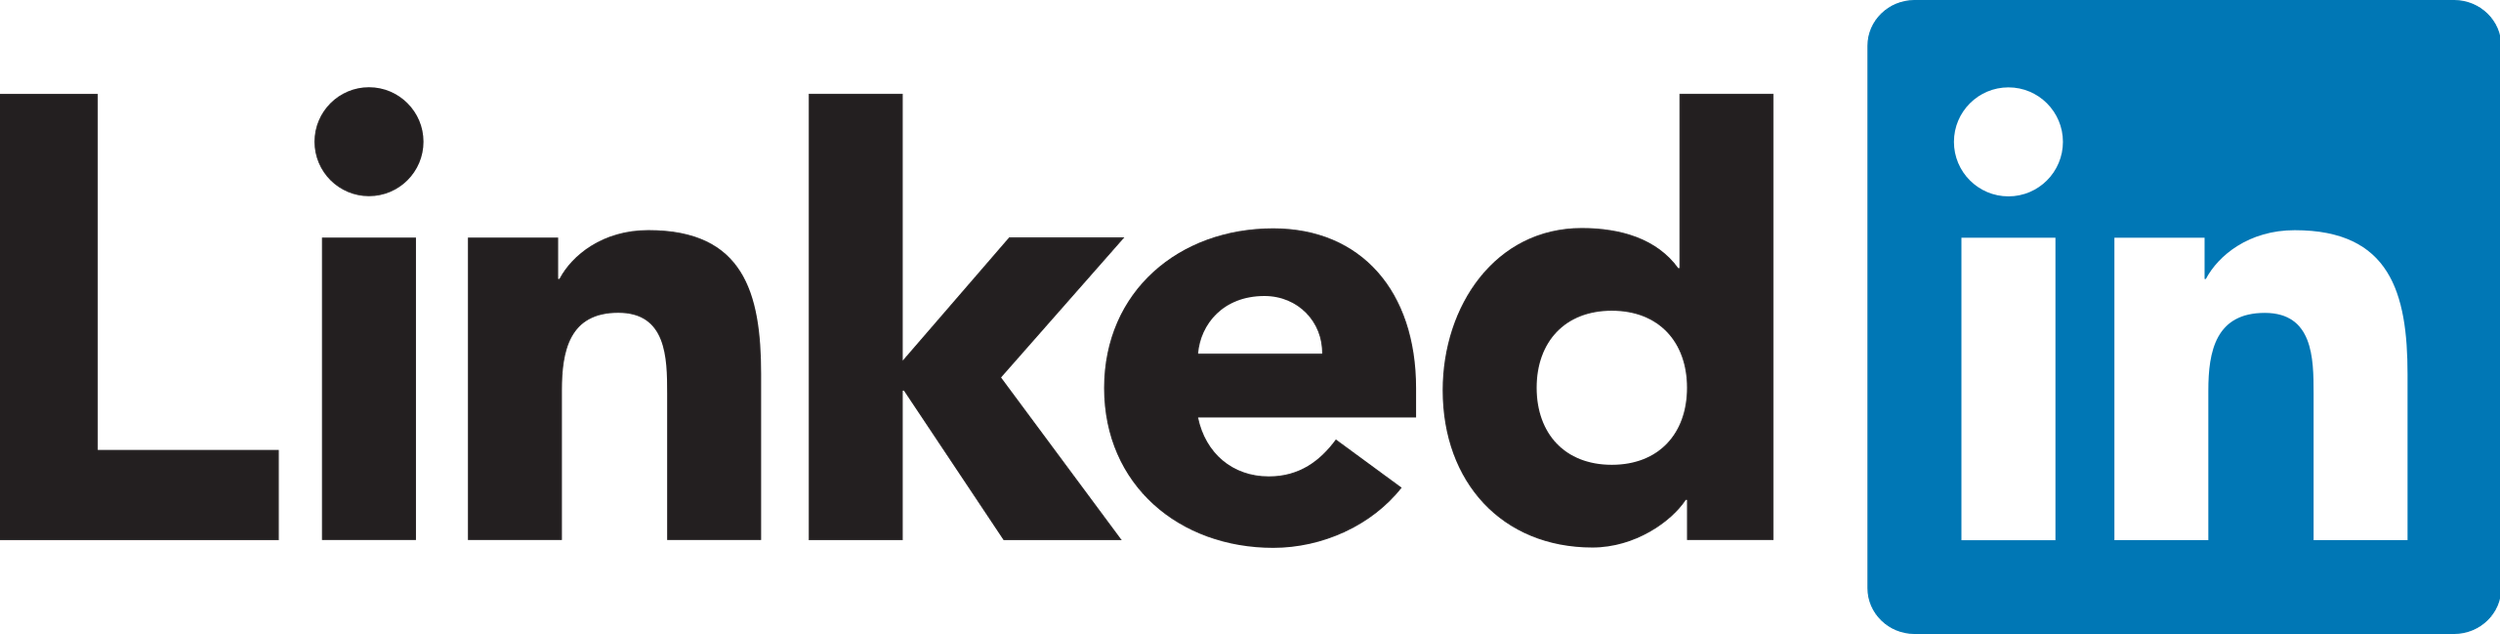 LinkedIn_Logo_2013.svg.png